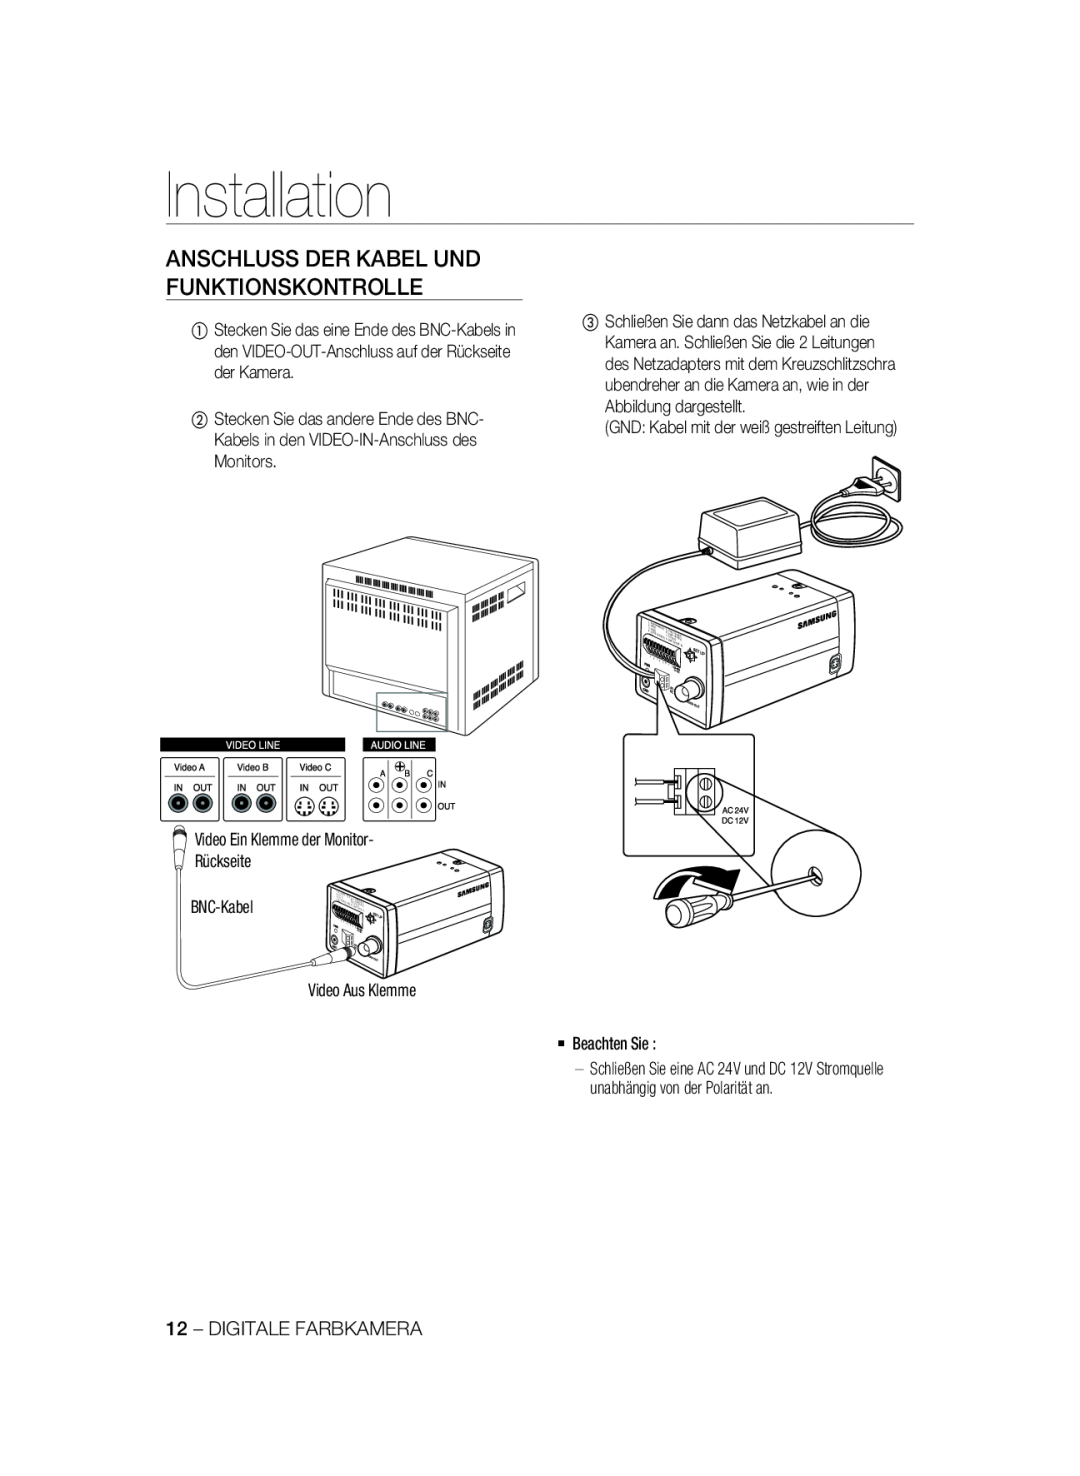 Samsung SCC-B2337P, SCC-B2037P manual Anschluss Der Kabel Und Funktionskontrolle, Installation 